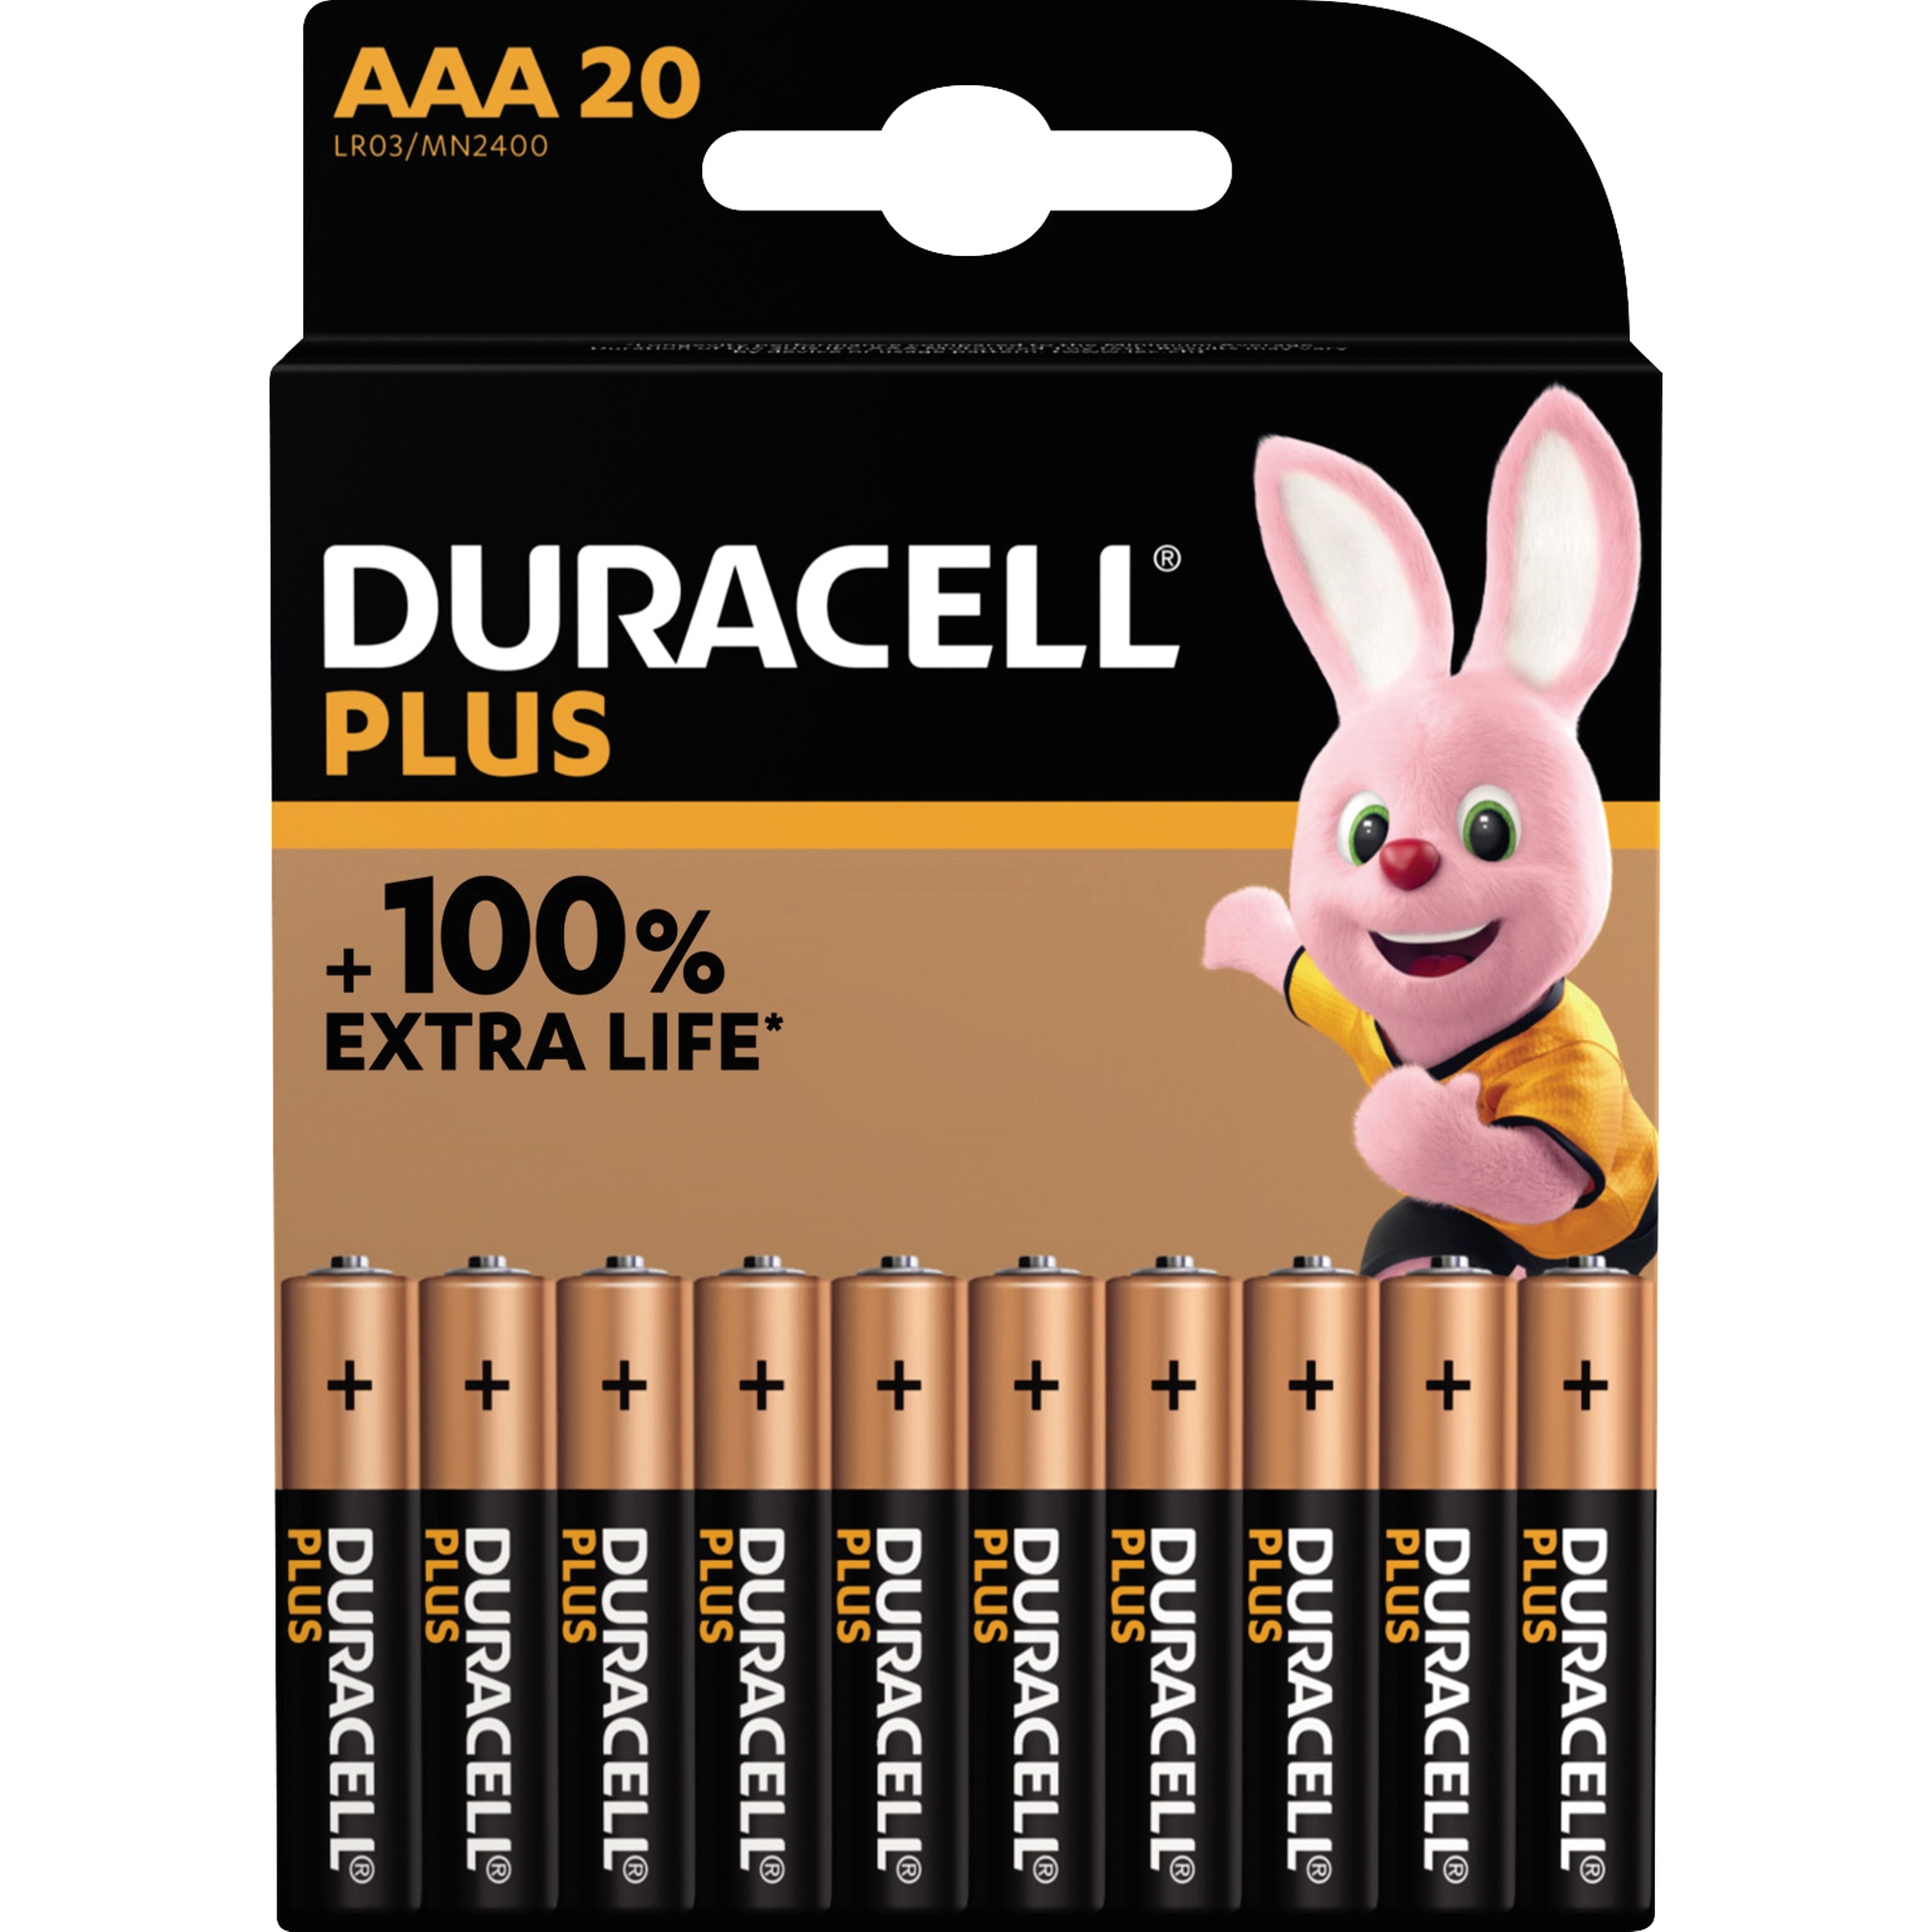 DURACELL Batterie Plus Micro AAA LR03 1,5V 20er Pack